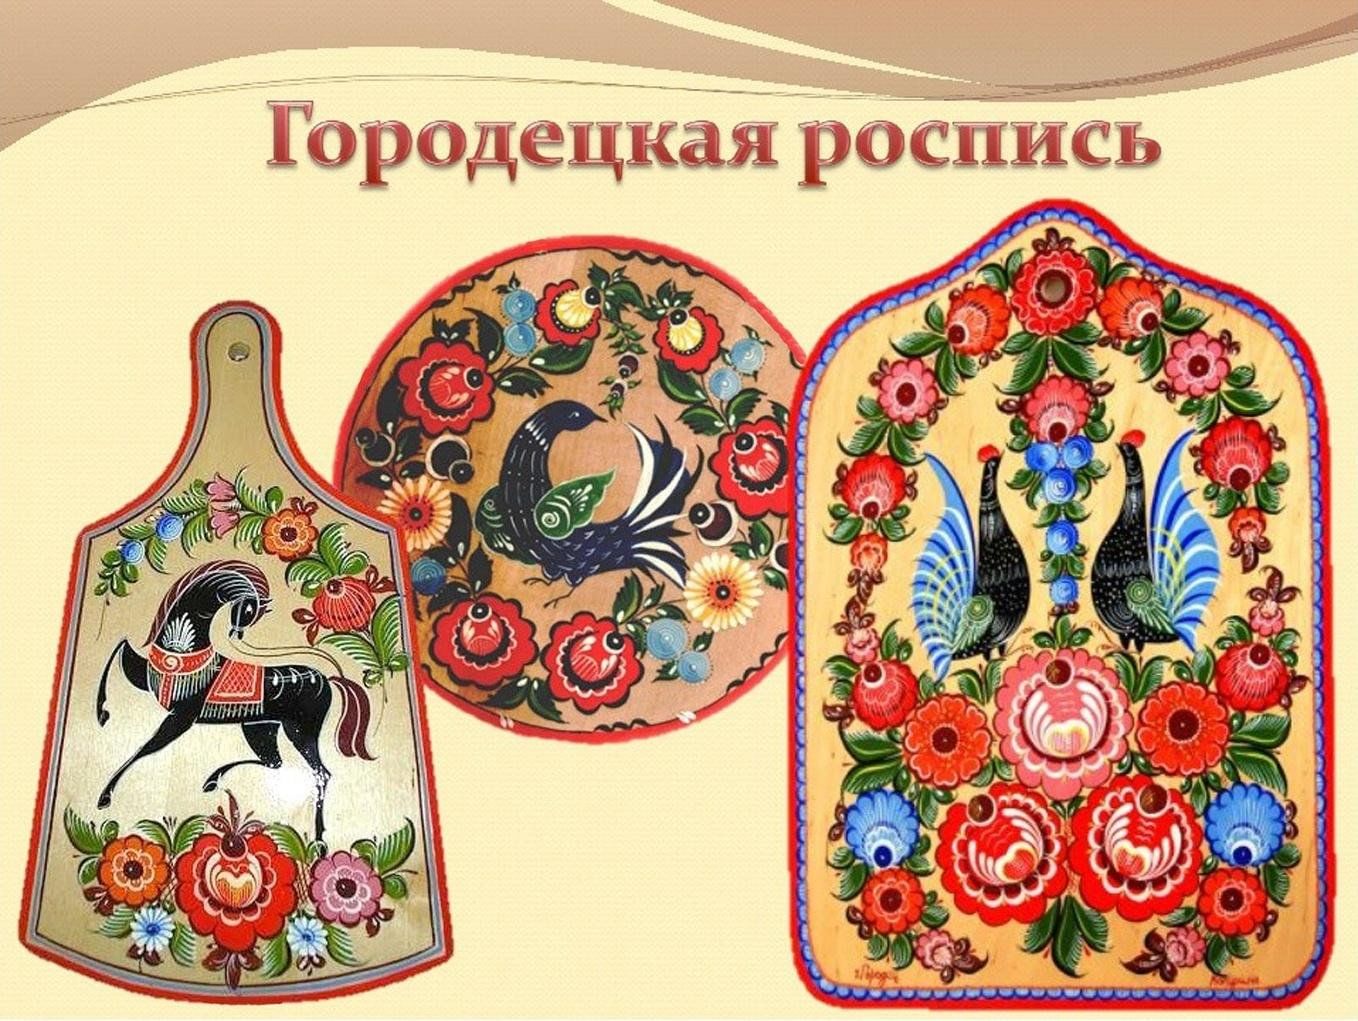 Традиционная роспись Городецкая Хохломская Городецкая